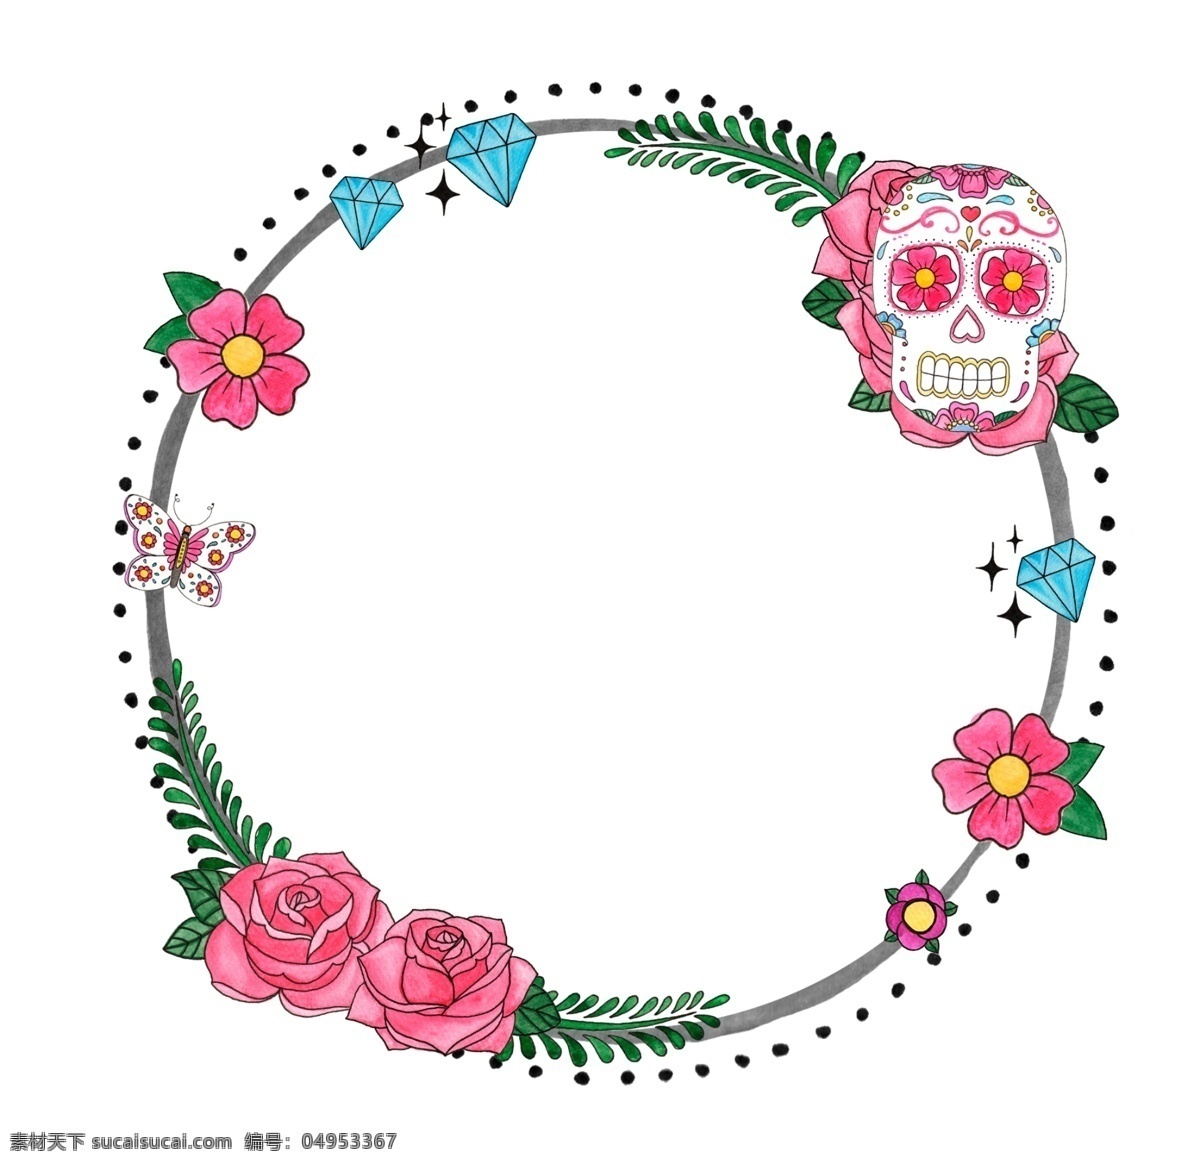 骷髅 花环 源文件 潮流 花朵 设计素材 装饰素材